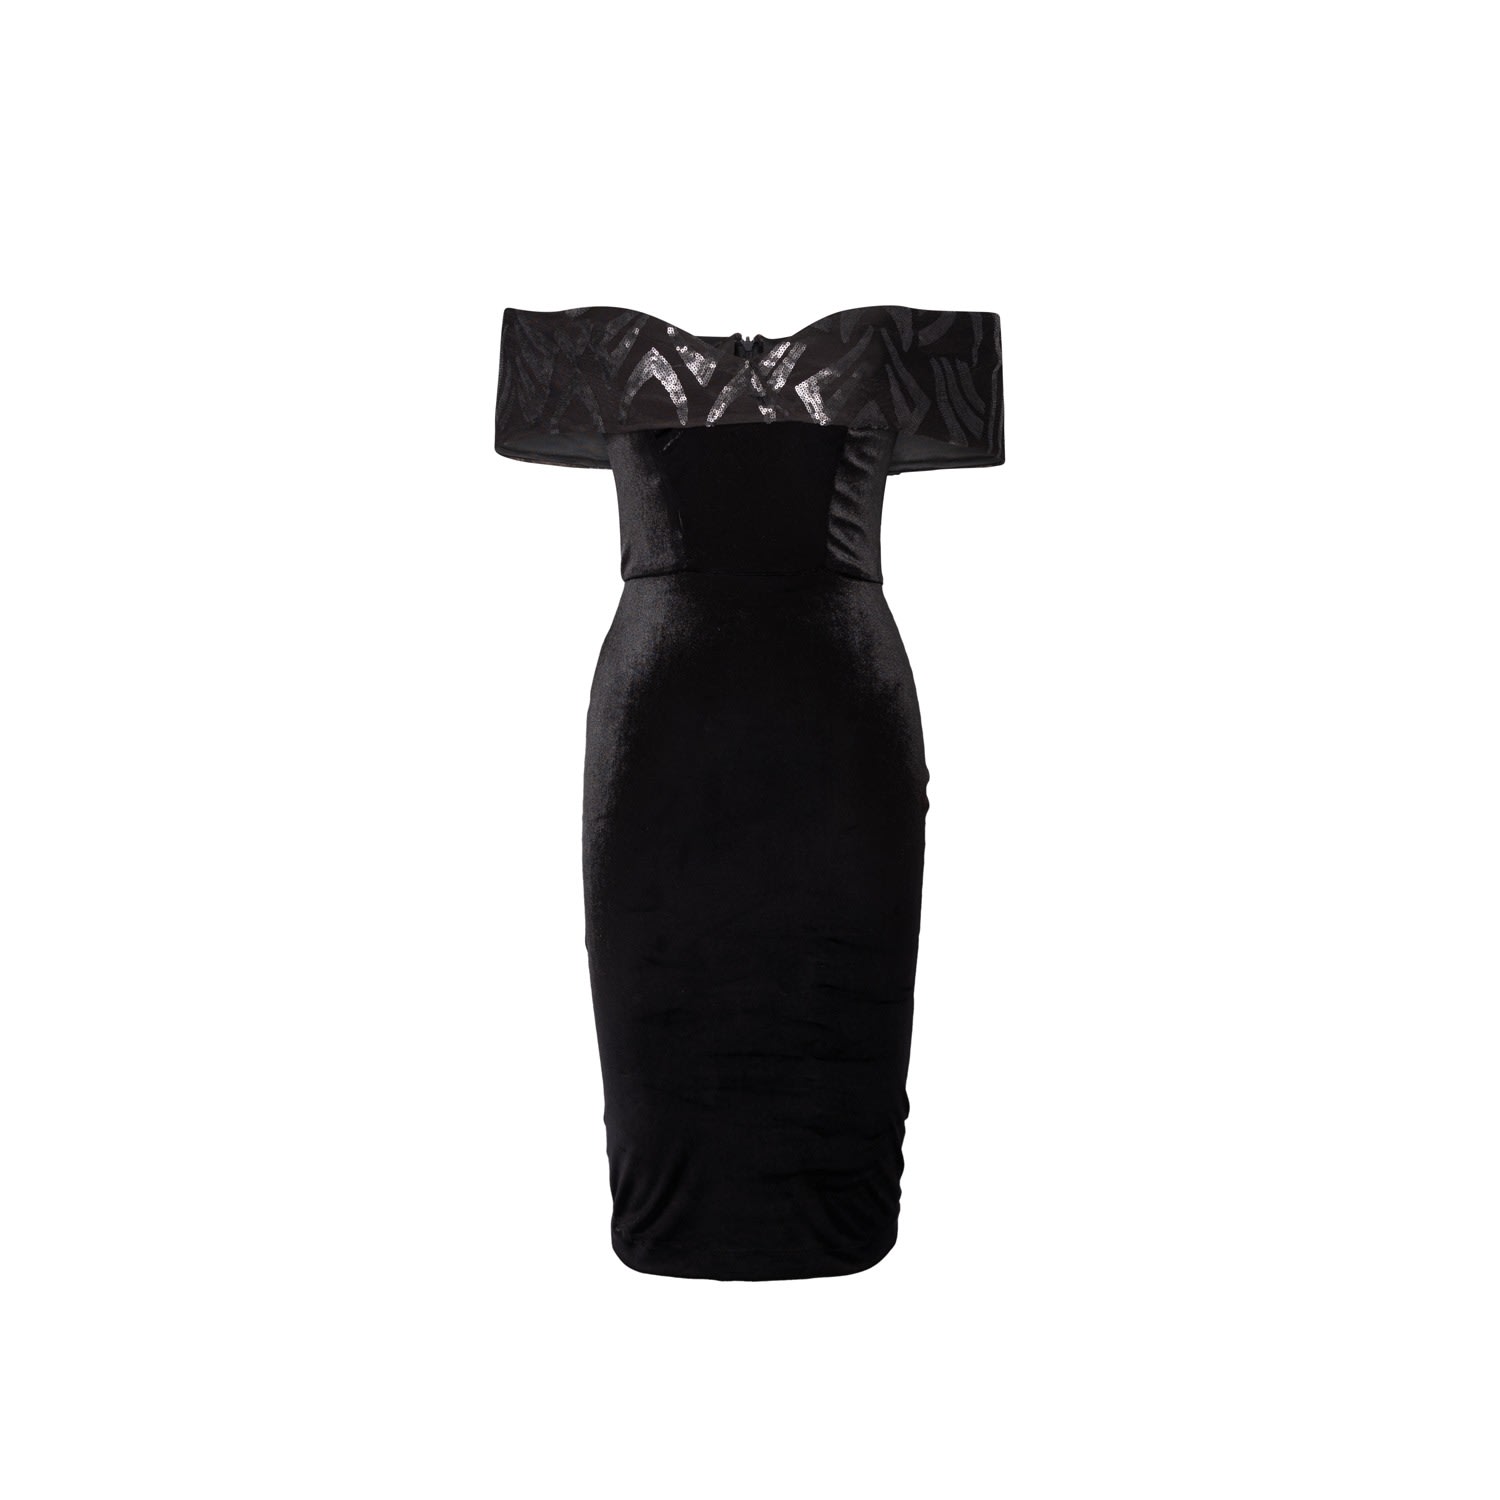 Women’s Cocktail Dress In Black Velvet Whit Sequin Embellished Neckline Medium Vidi Blak